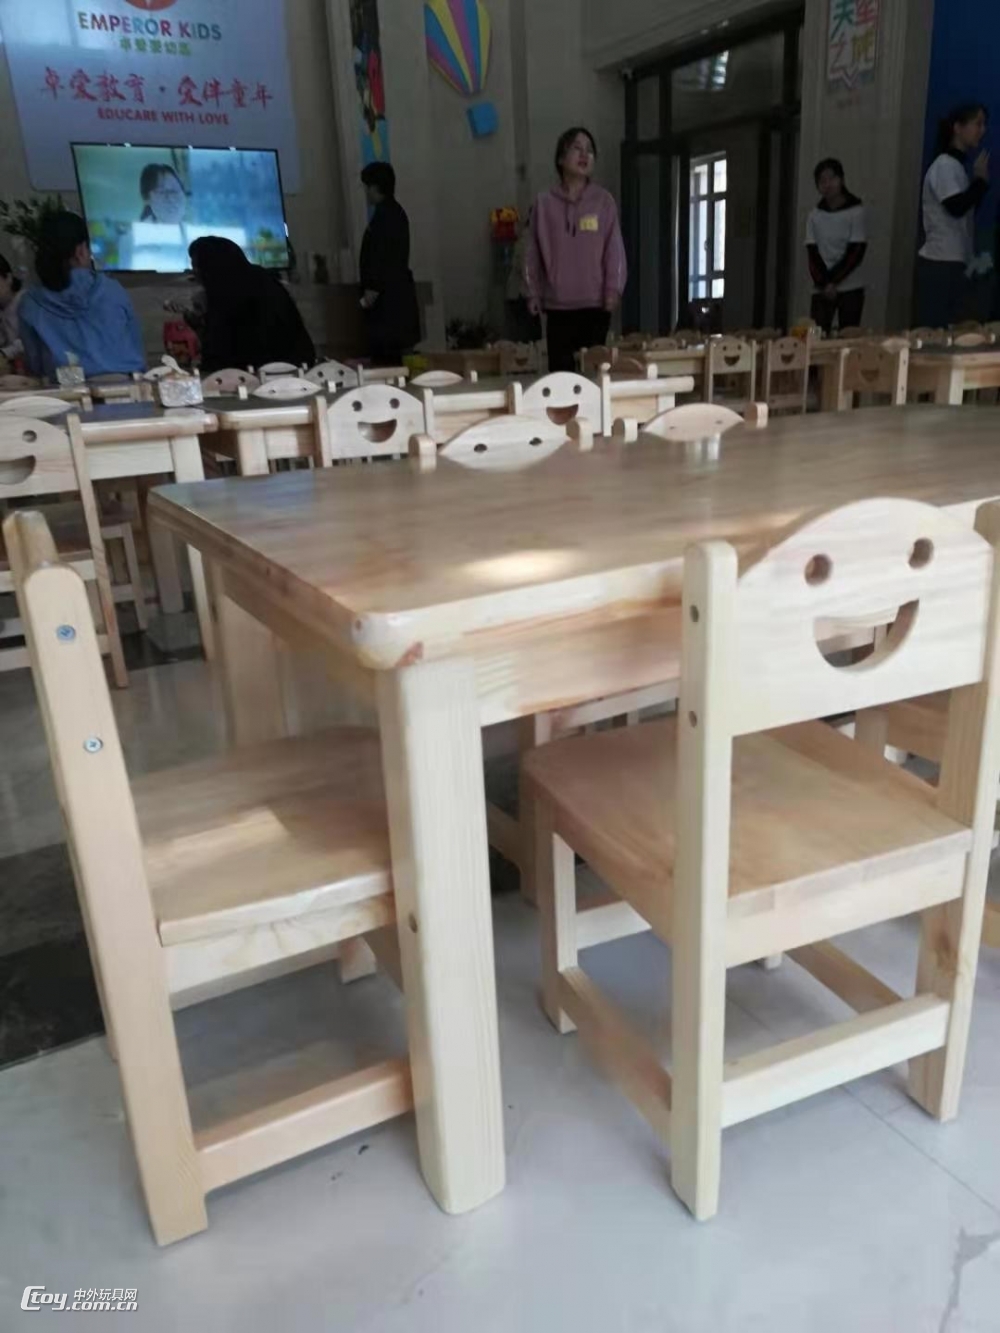 幼儿园实木桌椅/儿童橡木桌/幼儿园笑脸椅/实木桌椅厂家